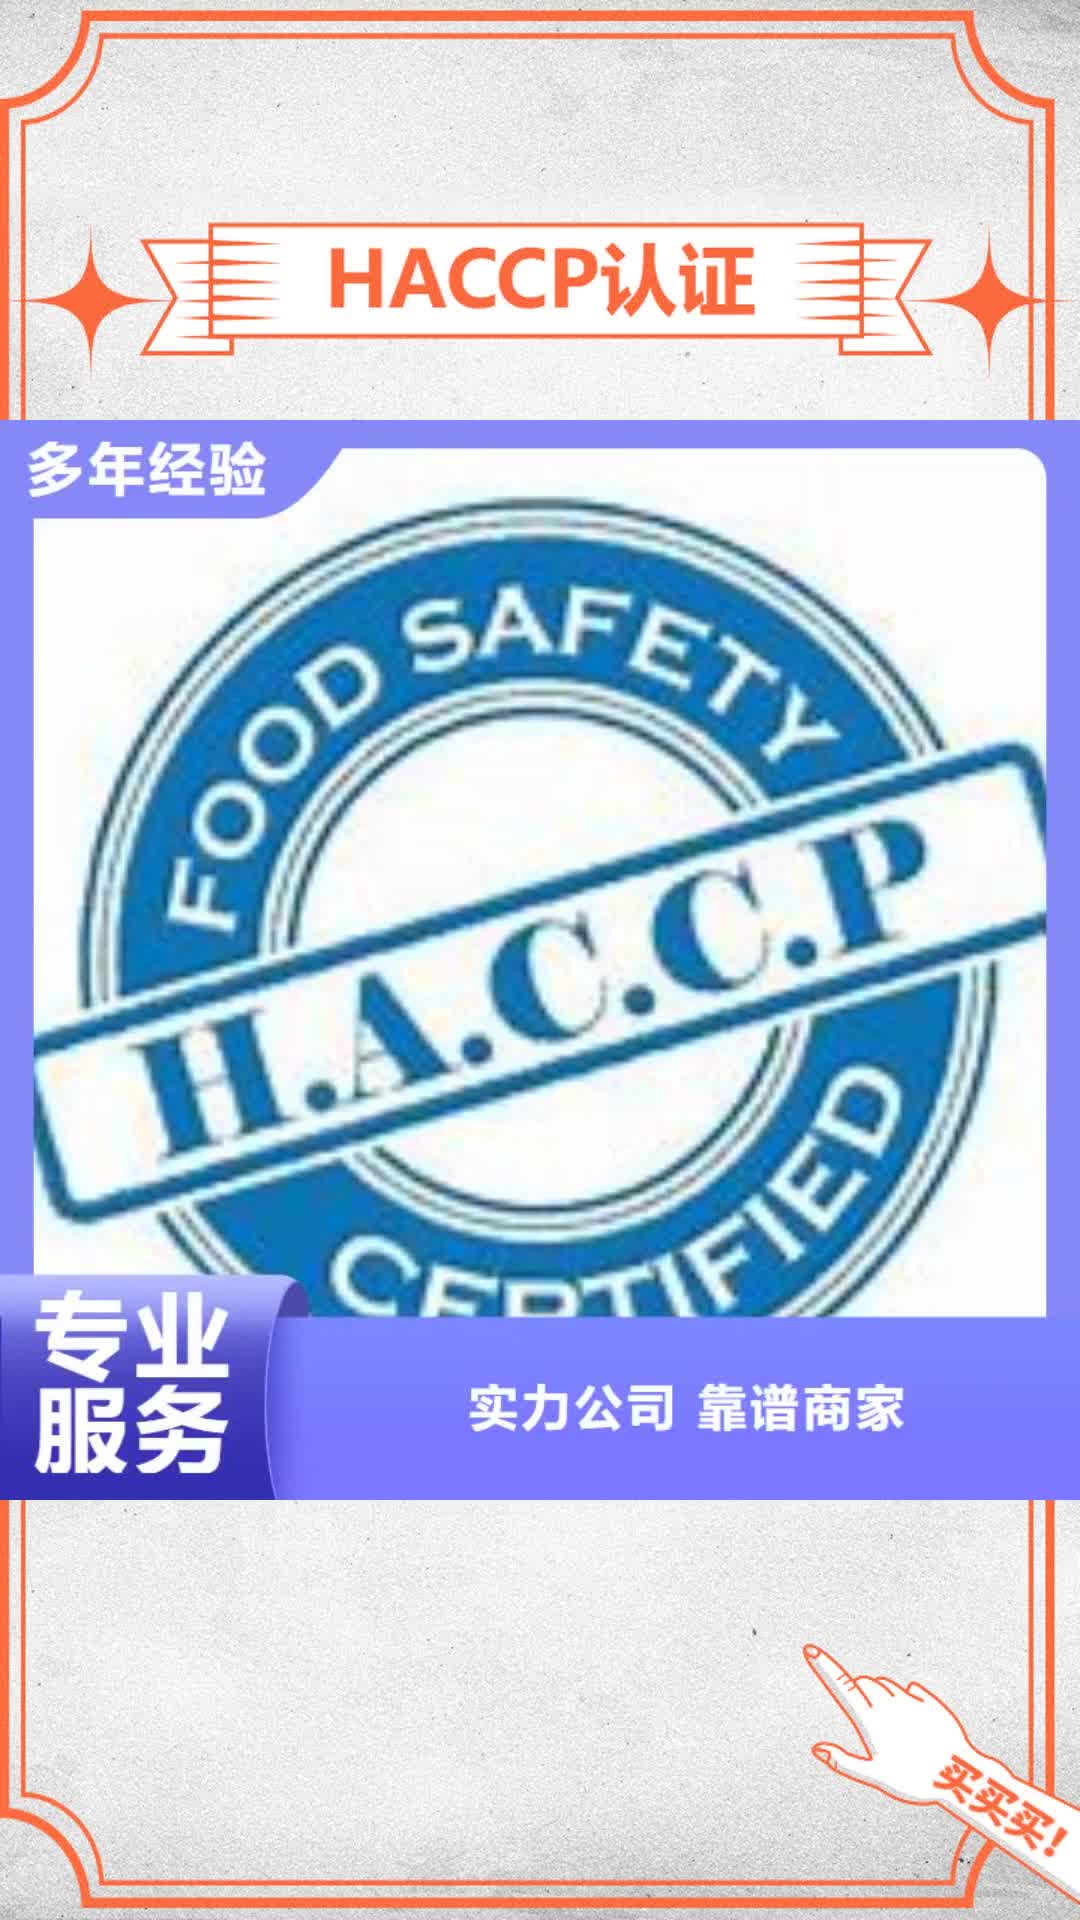 亳州【HACCP认证】_GJB9001C认证专业可靠